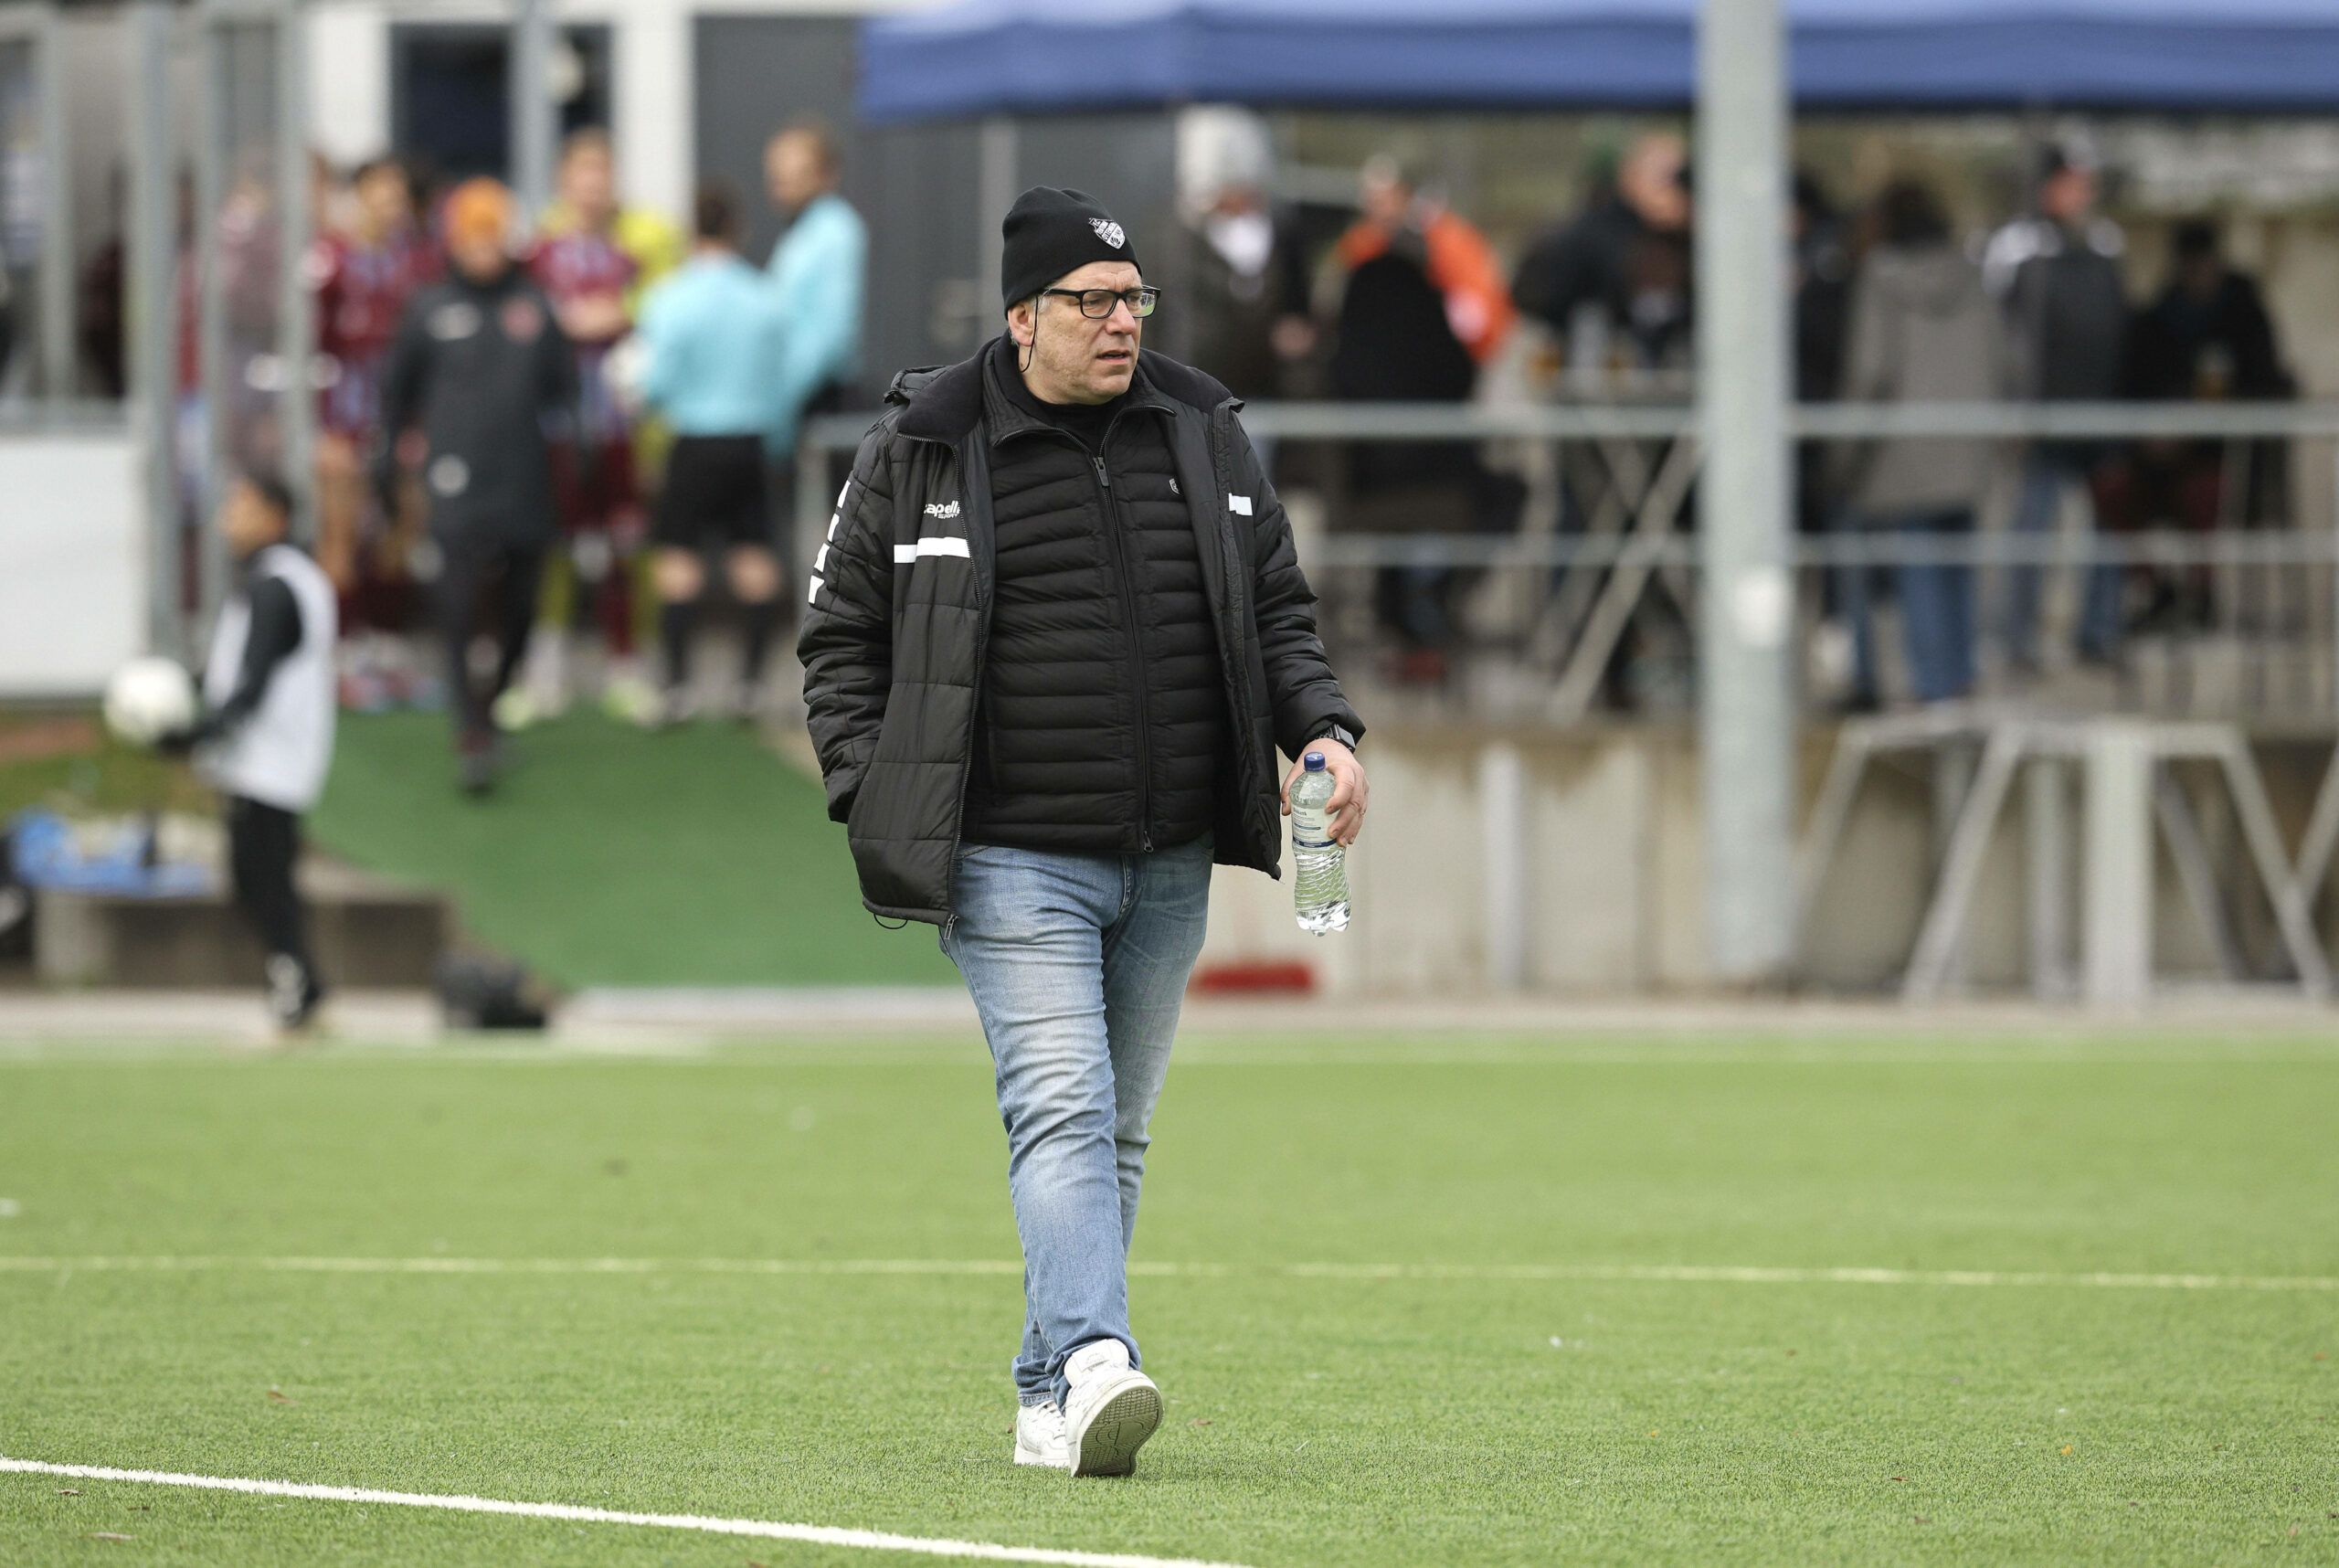 Teutonia-Boss Mazzagatti bekräftigt: Die Ottenser bleiben in der Regionalliga.